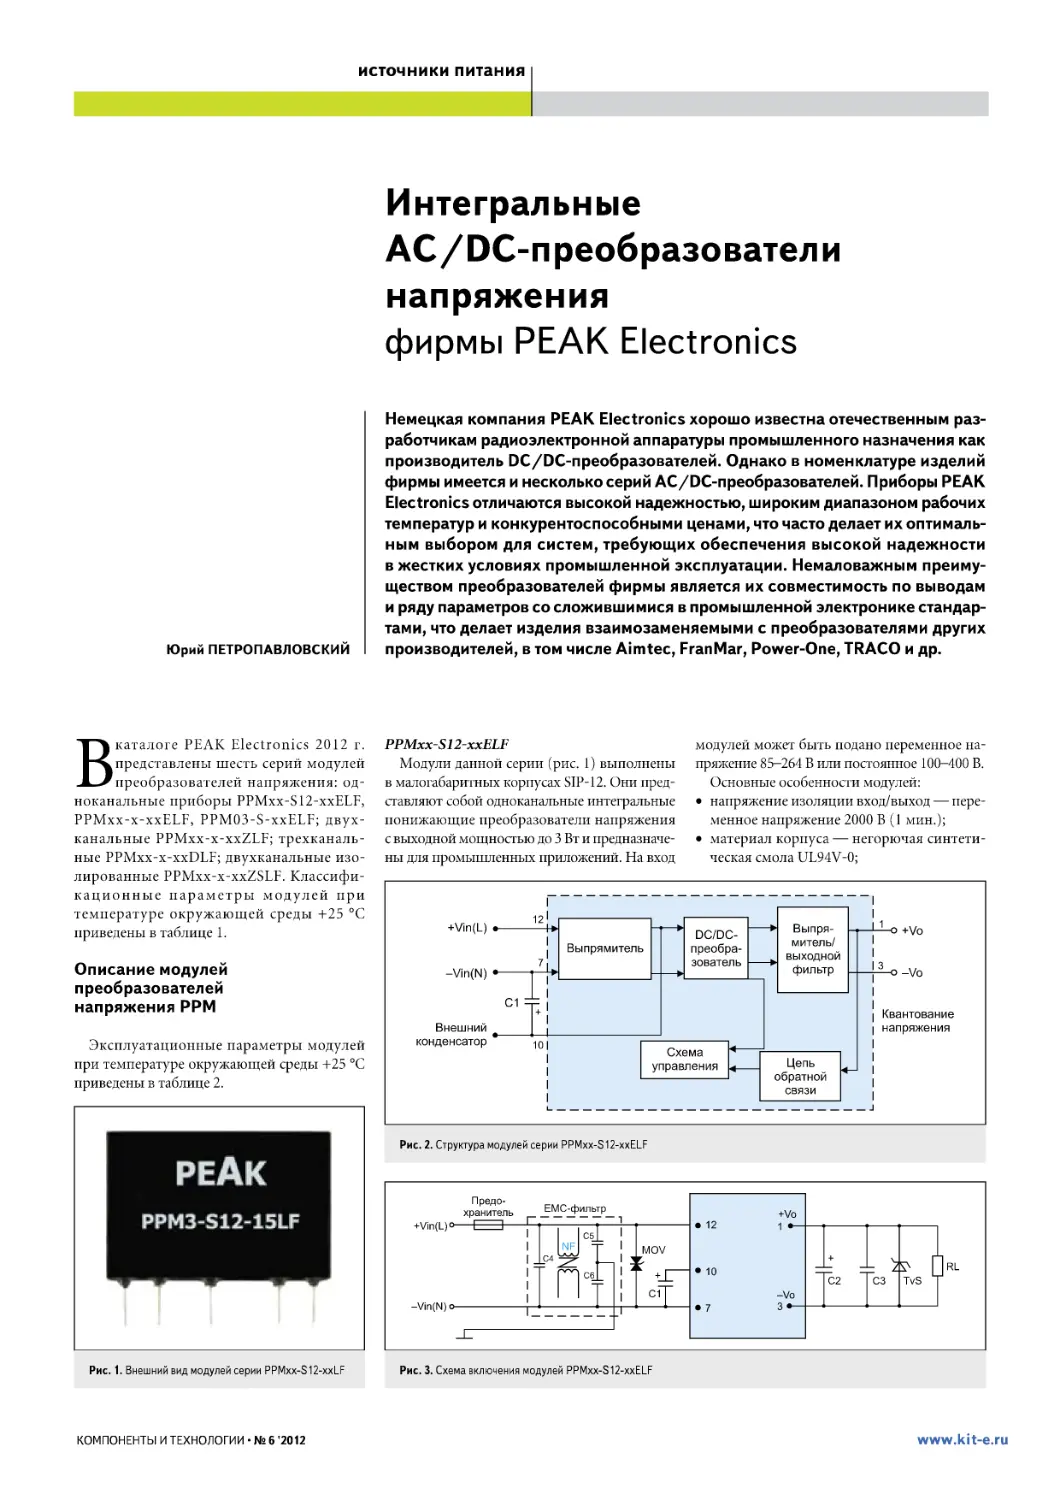 Интегральные AC/DC-преобразователи напряжения фирмы PEAK Electronics